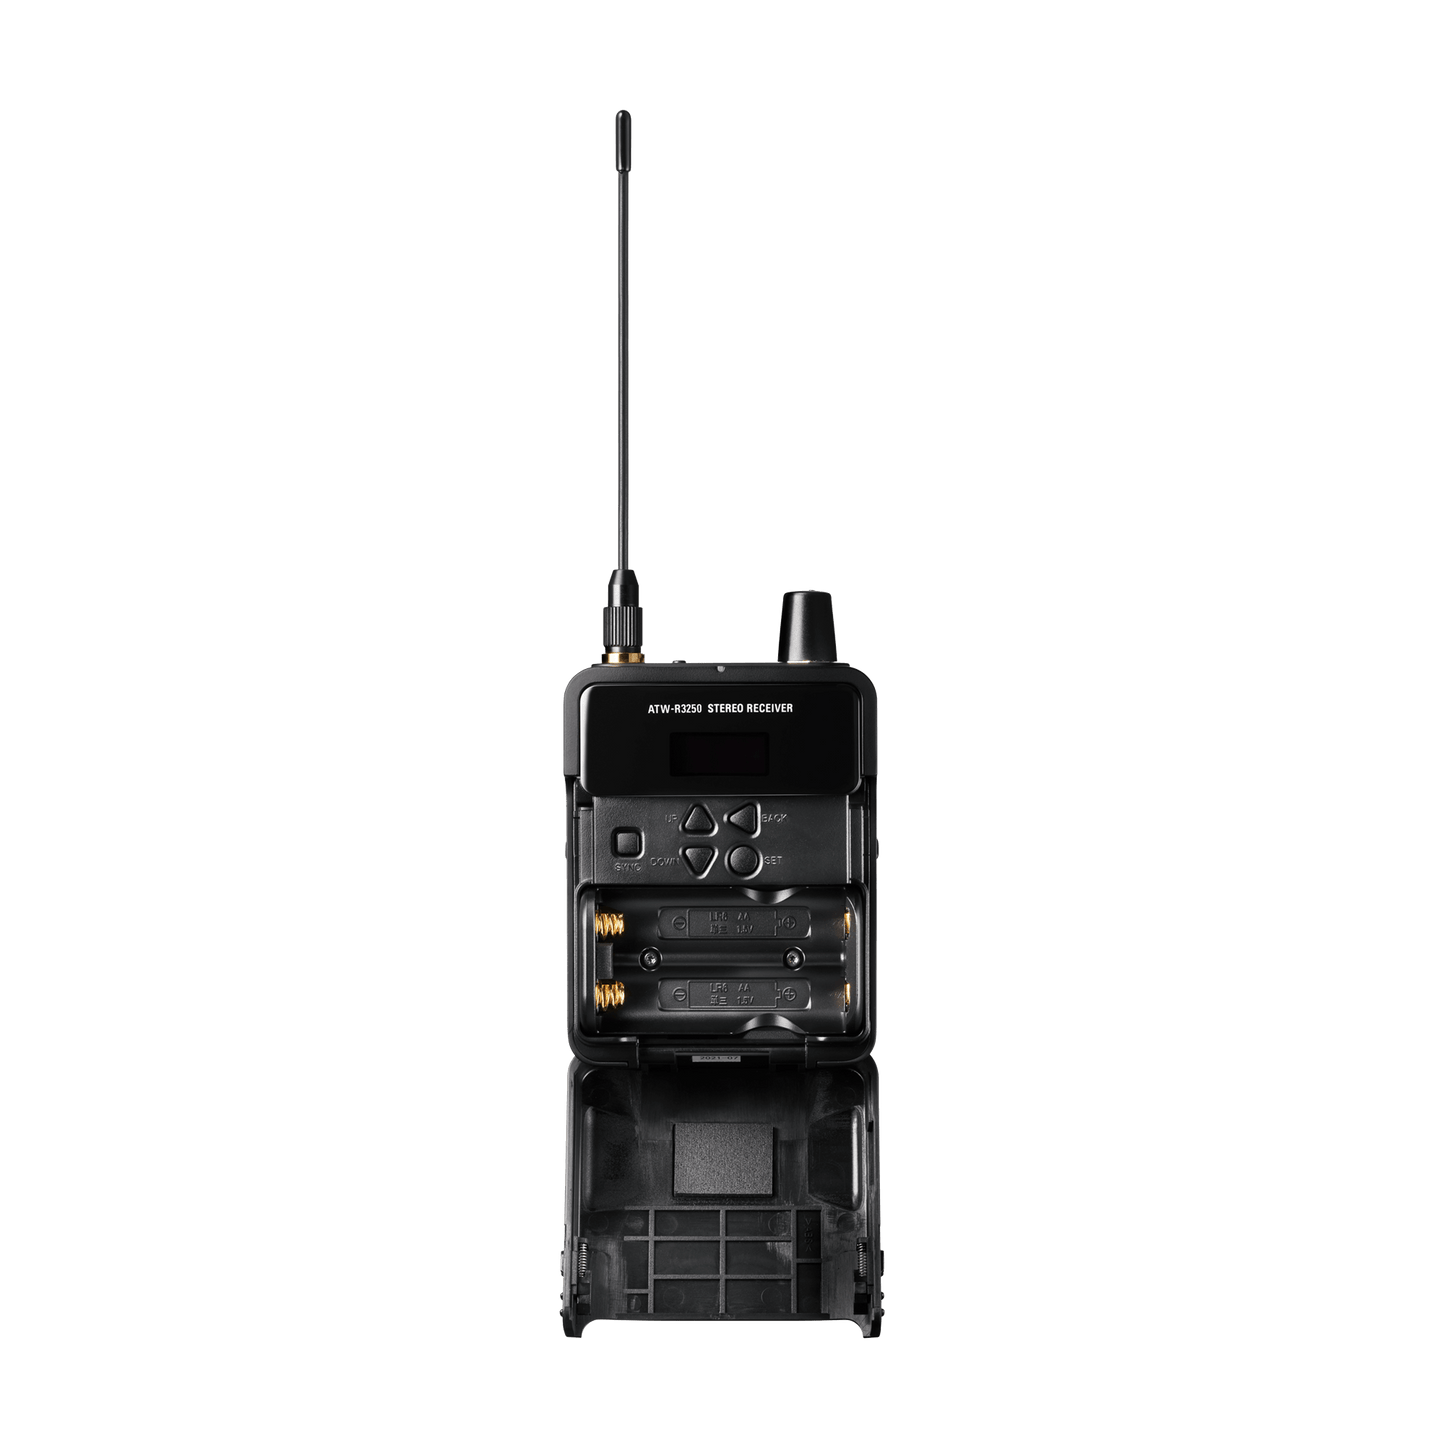 Audio Technica ATW-R3250 Wireless In-Ear Monitor Beltpack Receiver